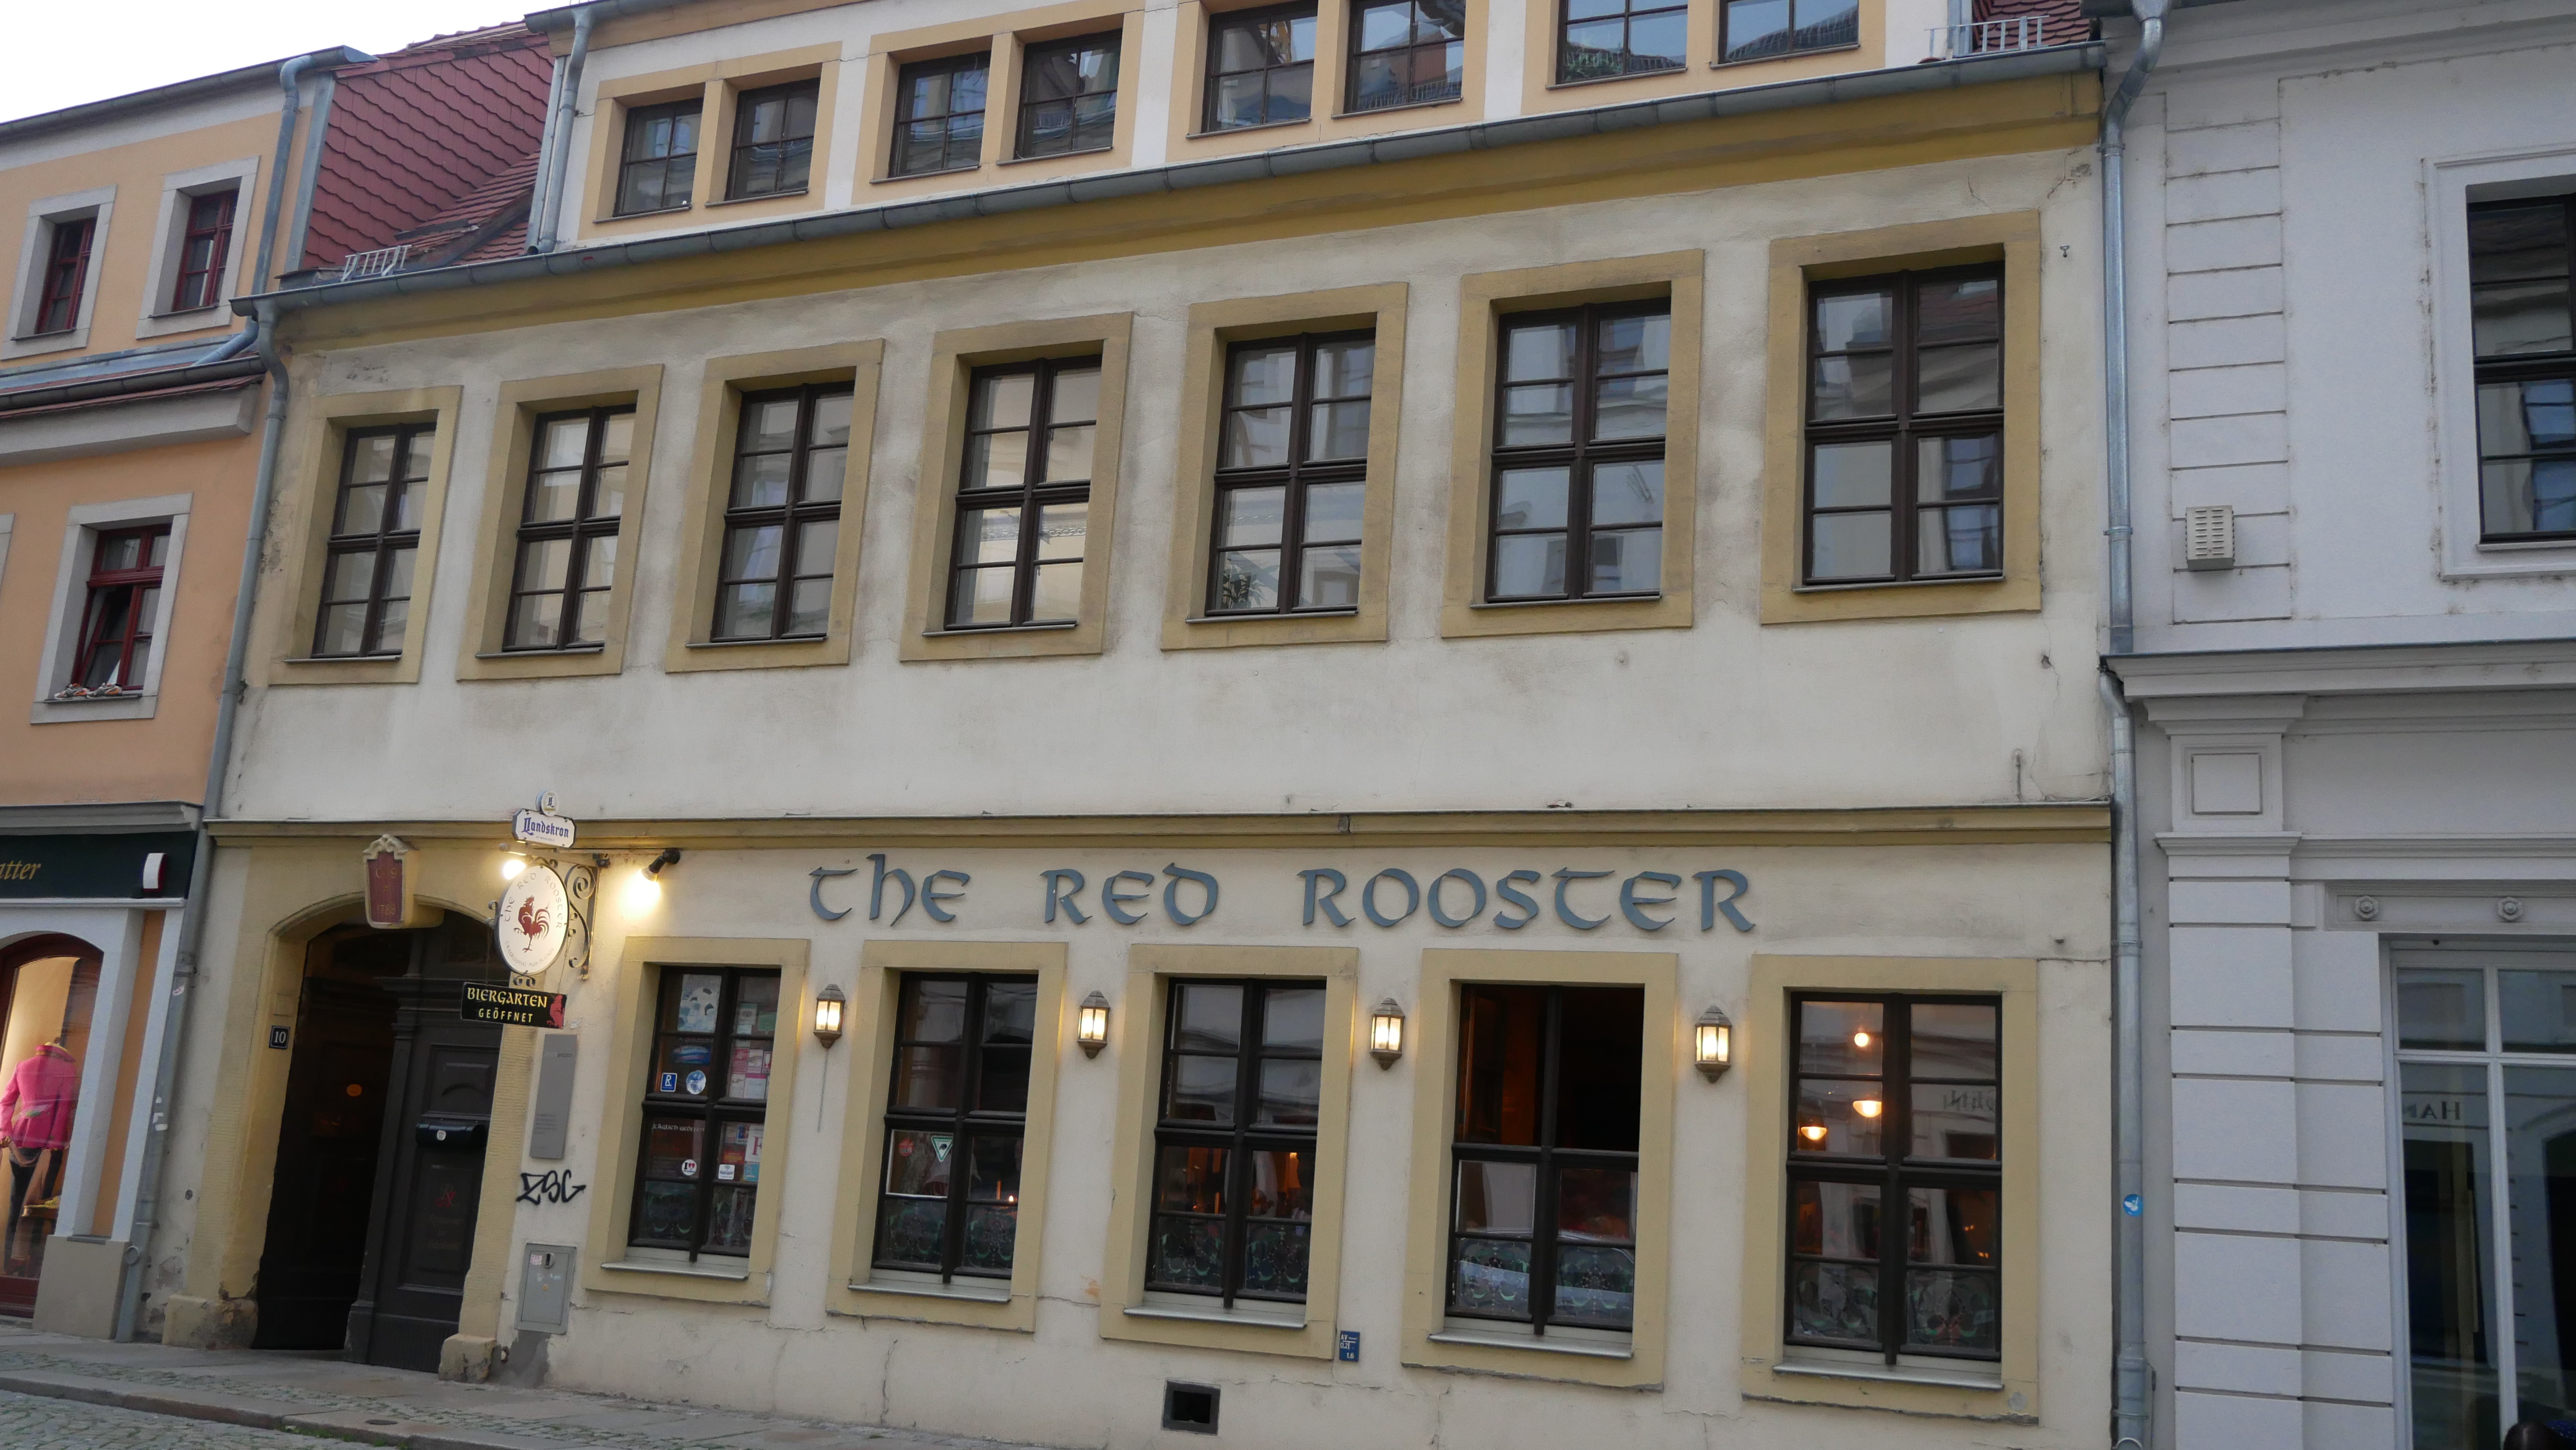 The Red Rooster - ein schöner Pub!